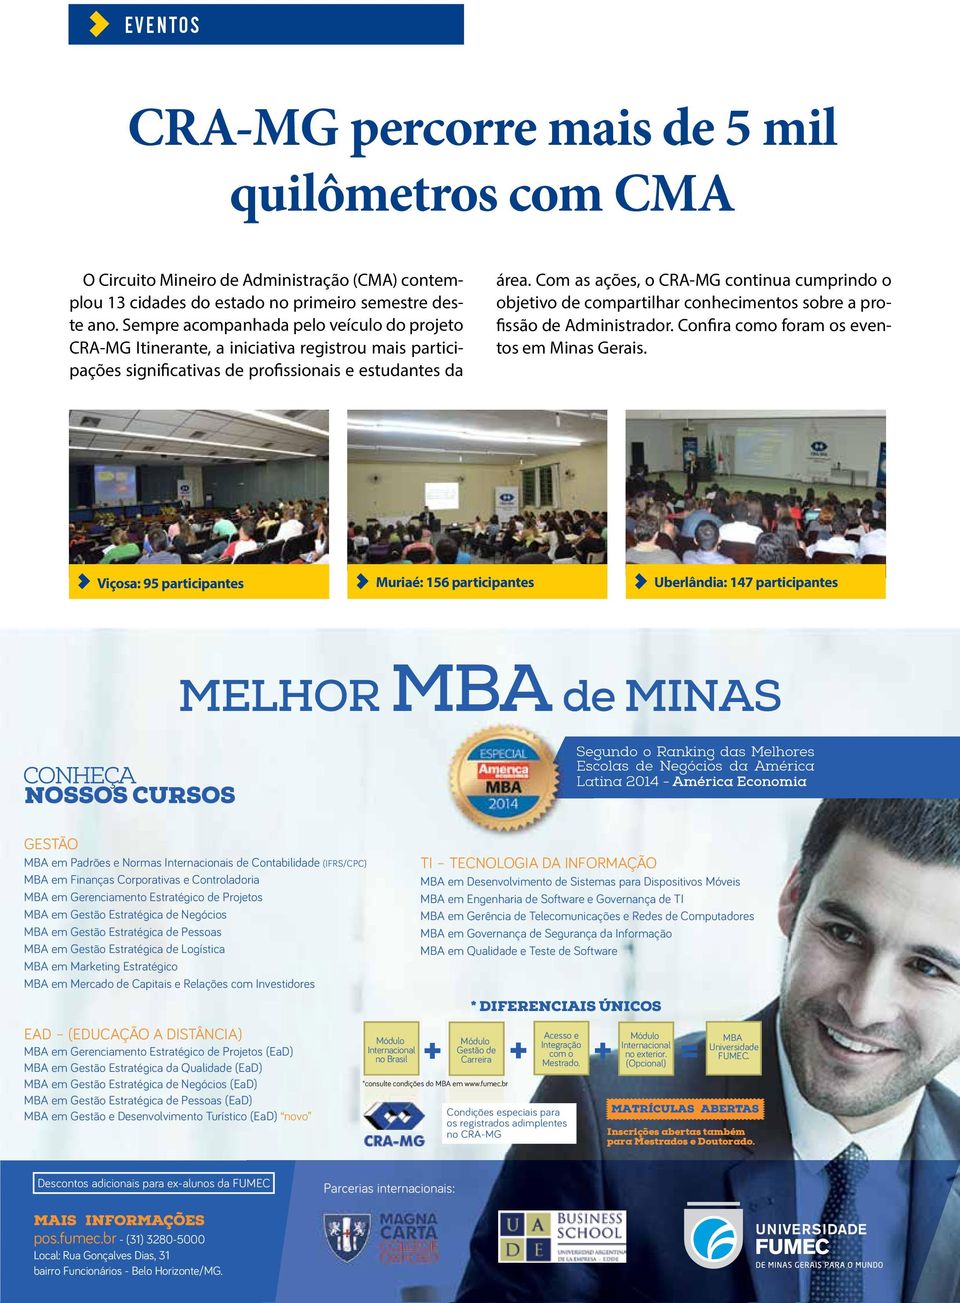 Com as ações, o CRA-MG continua cumprindo o objetivo de compartilhar conhecimentos sobre a profissão de Administrador. Confira como foram os eventos em Minas Gerais.